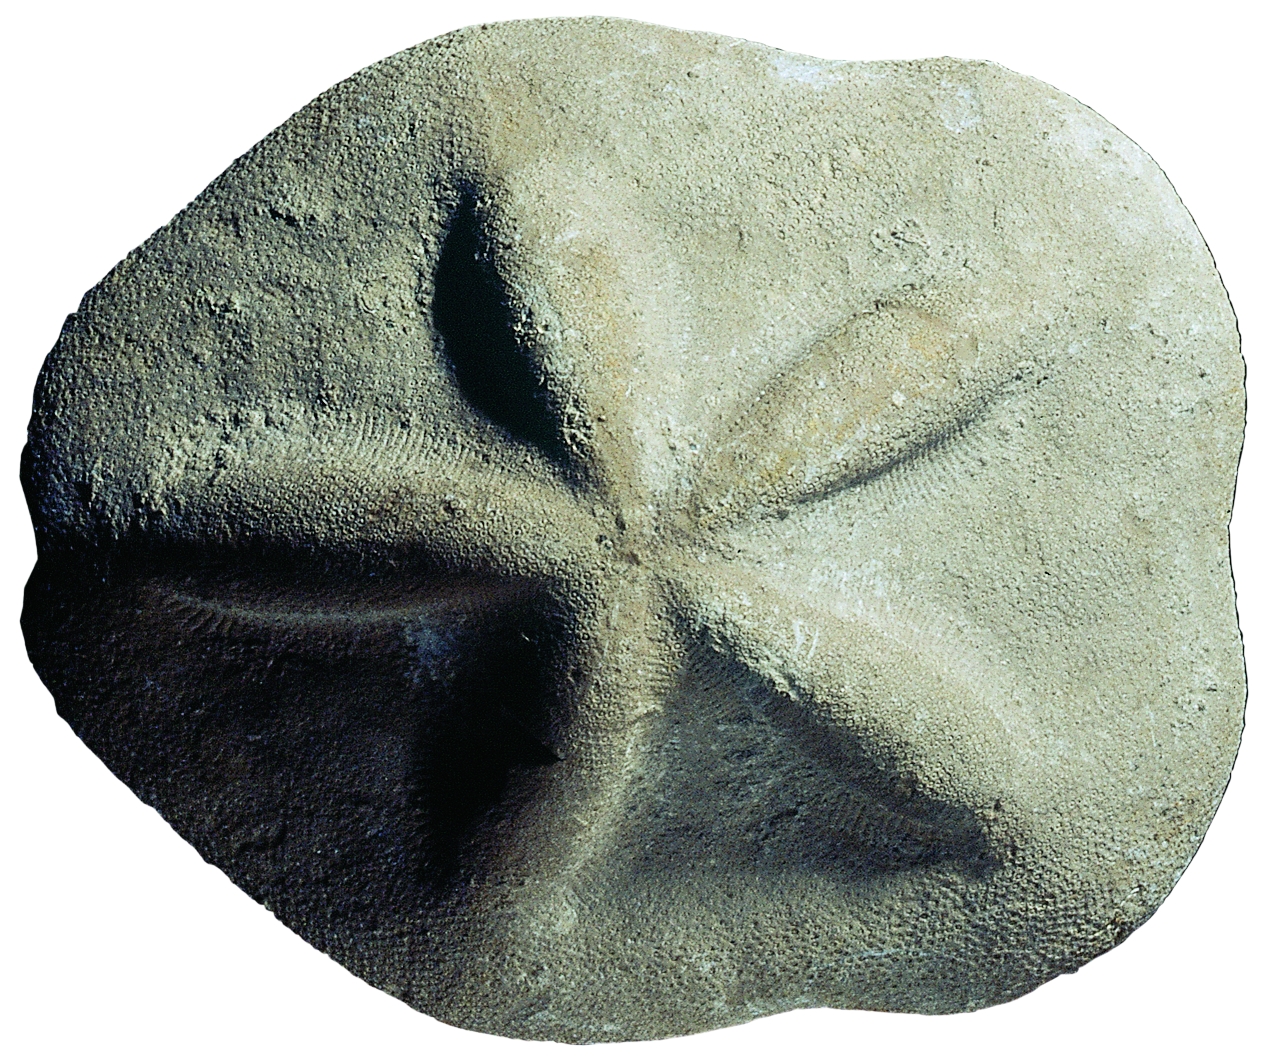 Clypeaster scillae. Miocè superior